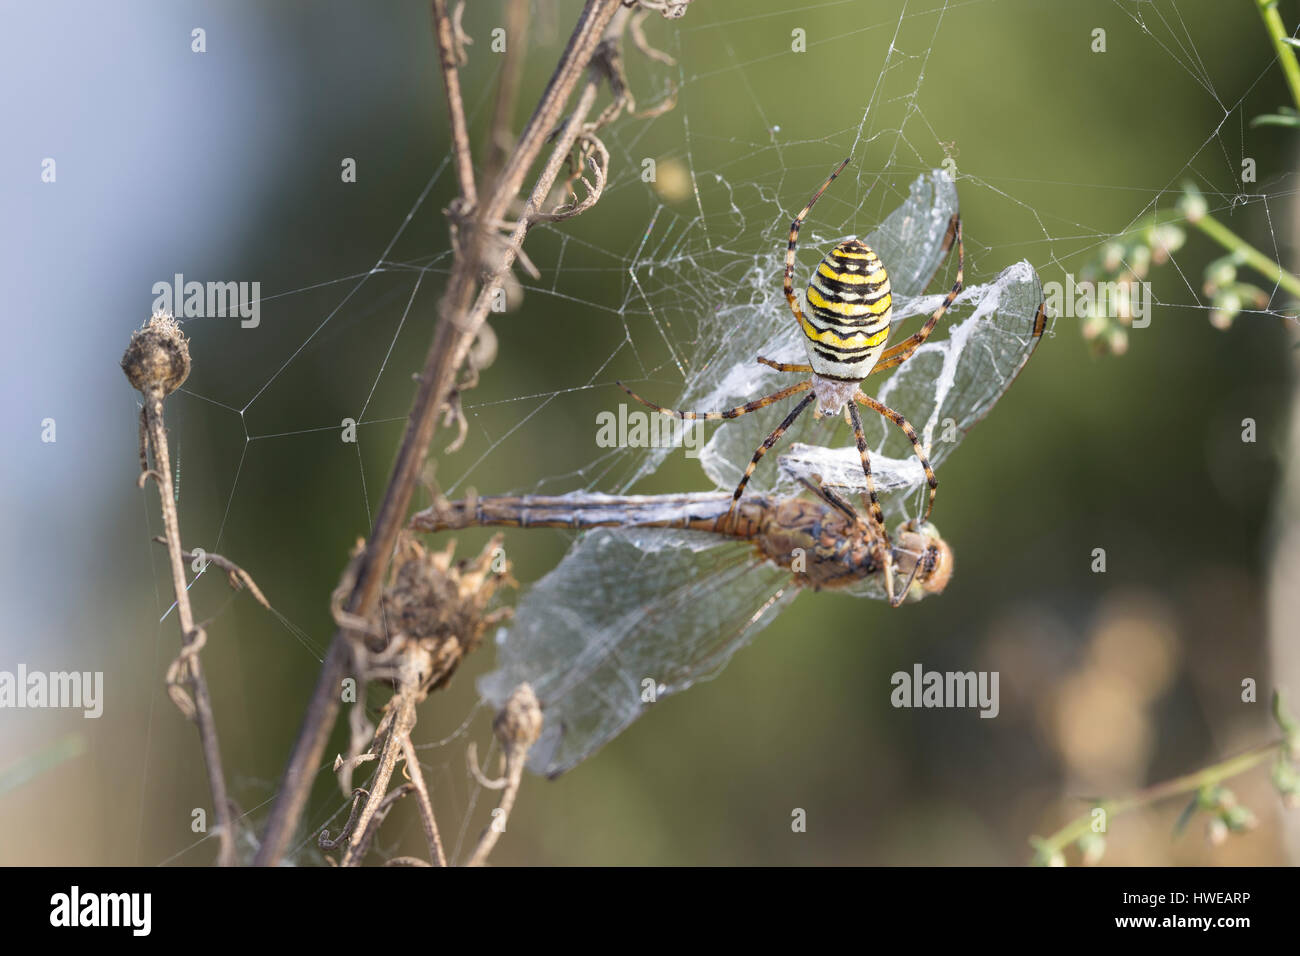 Zebraspinne Wespenspinne Argiope bruennichi,,, Spinne in Ihrem Netz mit einer Libelle als Beute, noir et jaune argiope, noir et jaune-spi jardin Banque D'Images